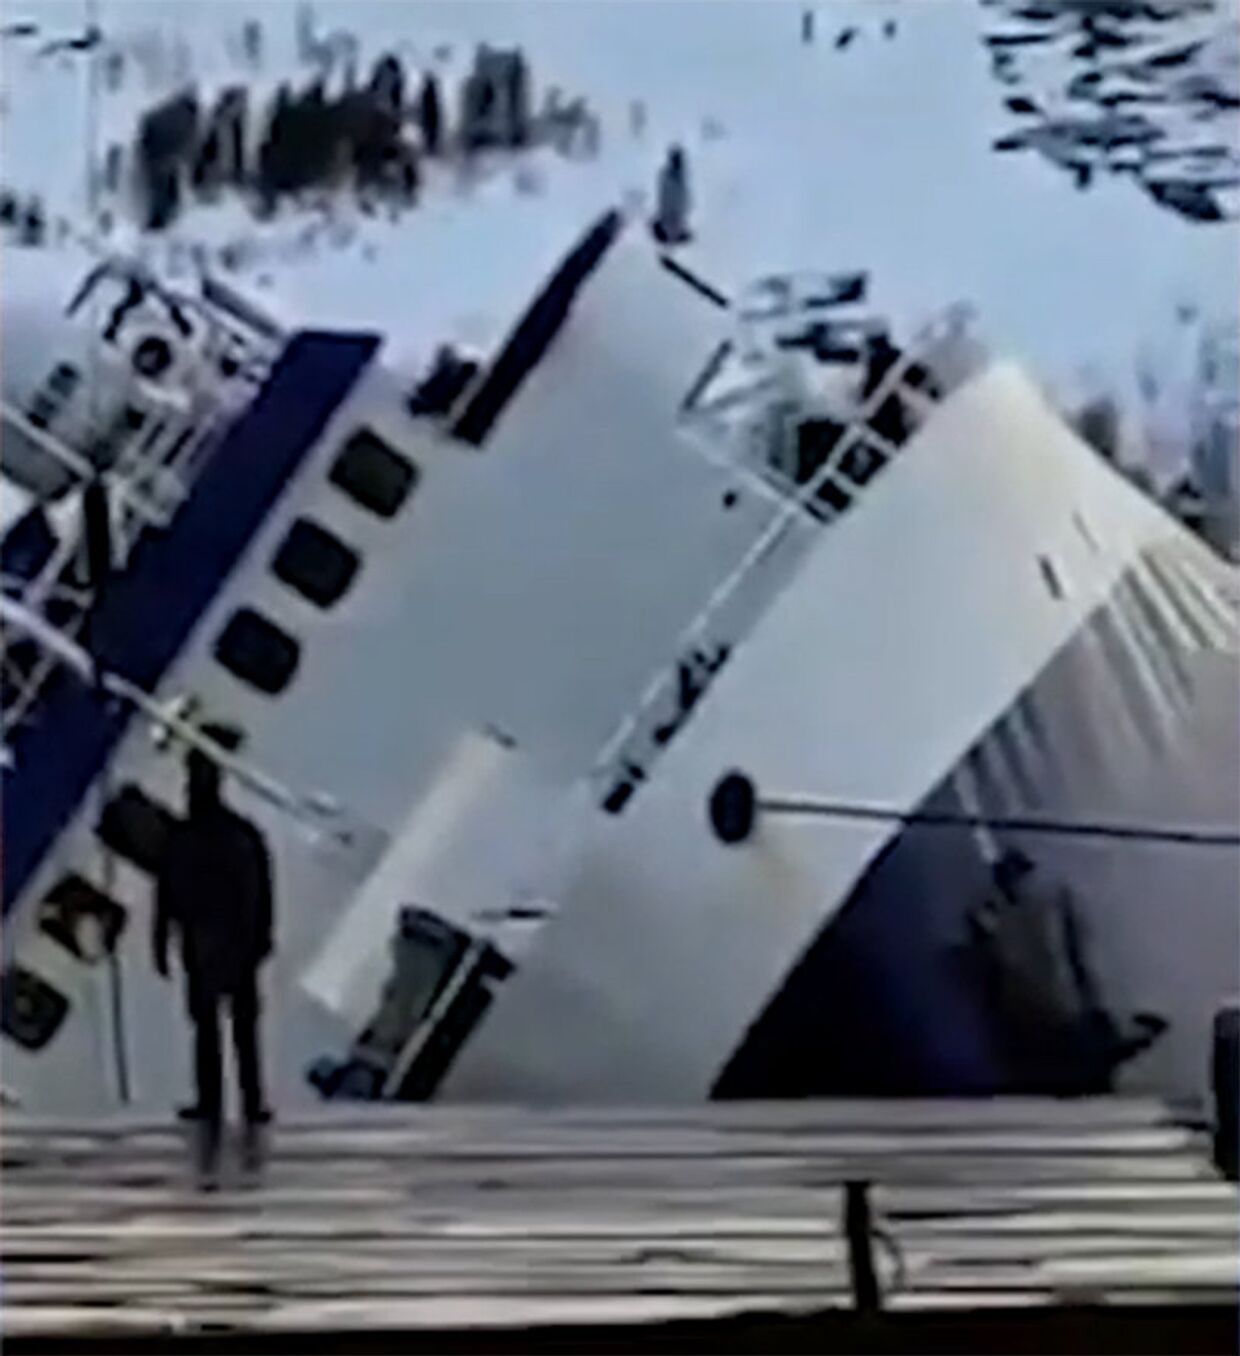 Российский траулер опрокинулся при спуске на воду в норвежском Киркенесе